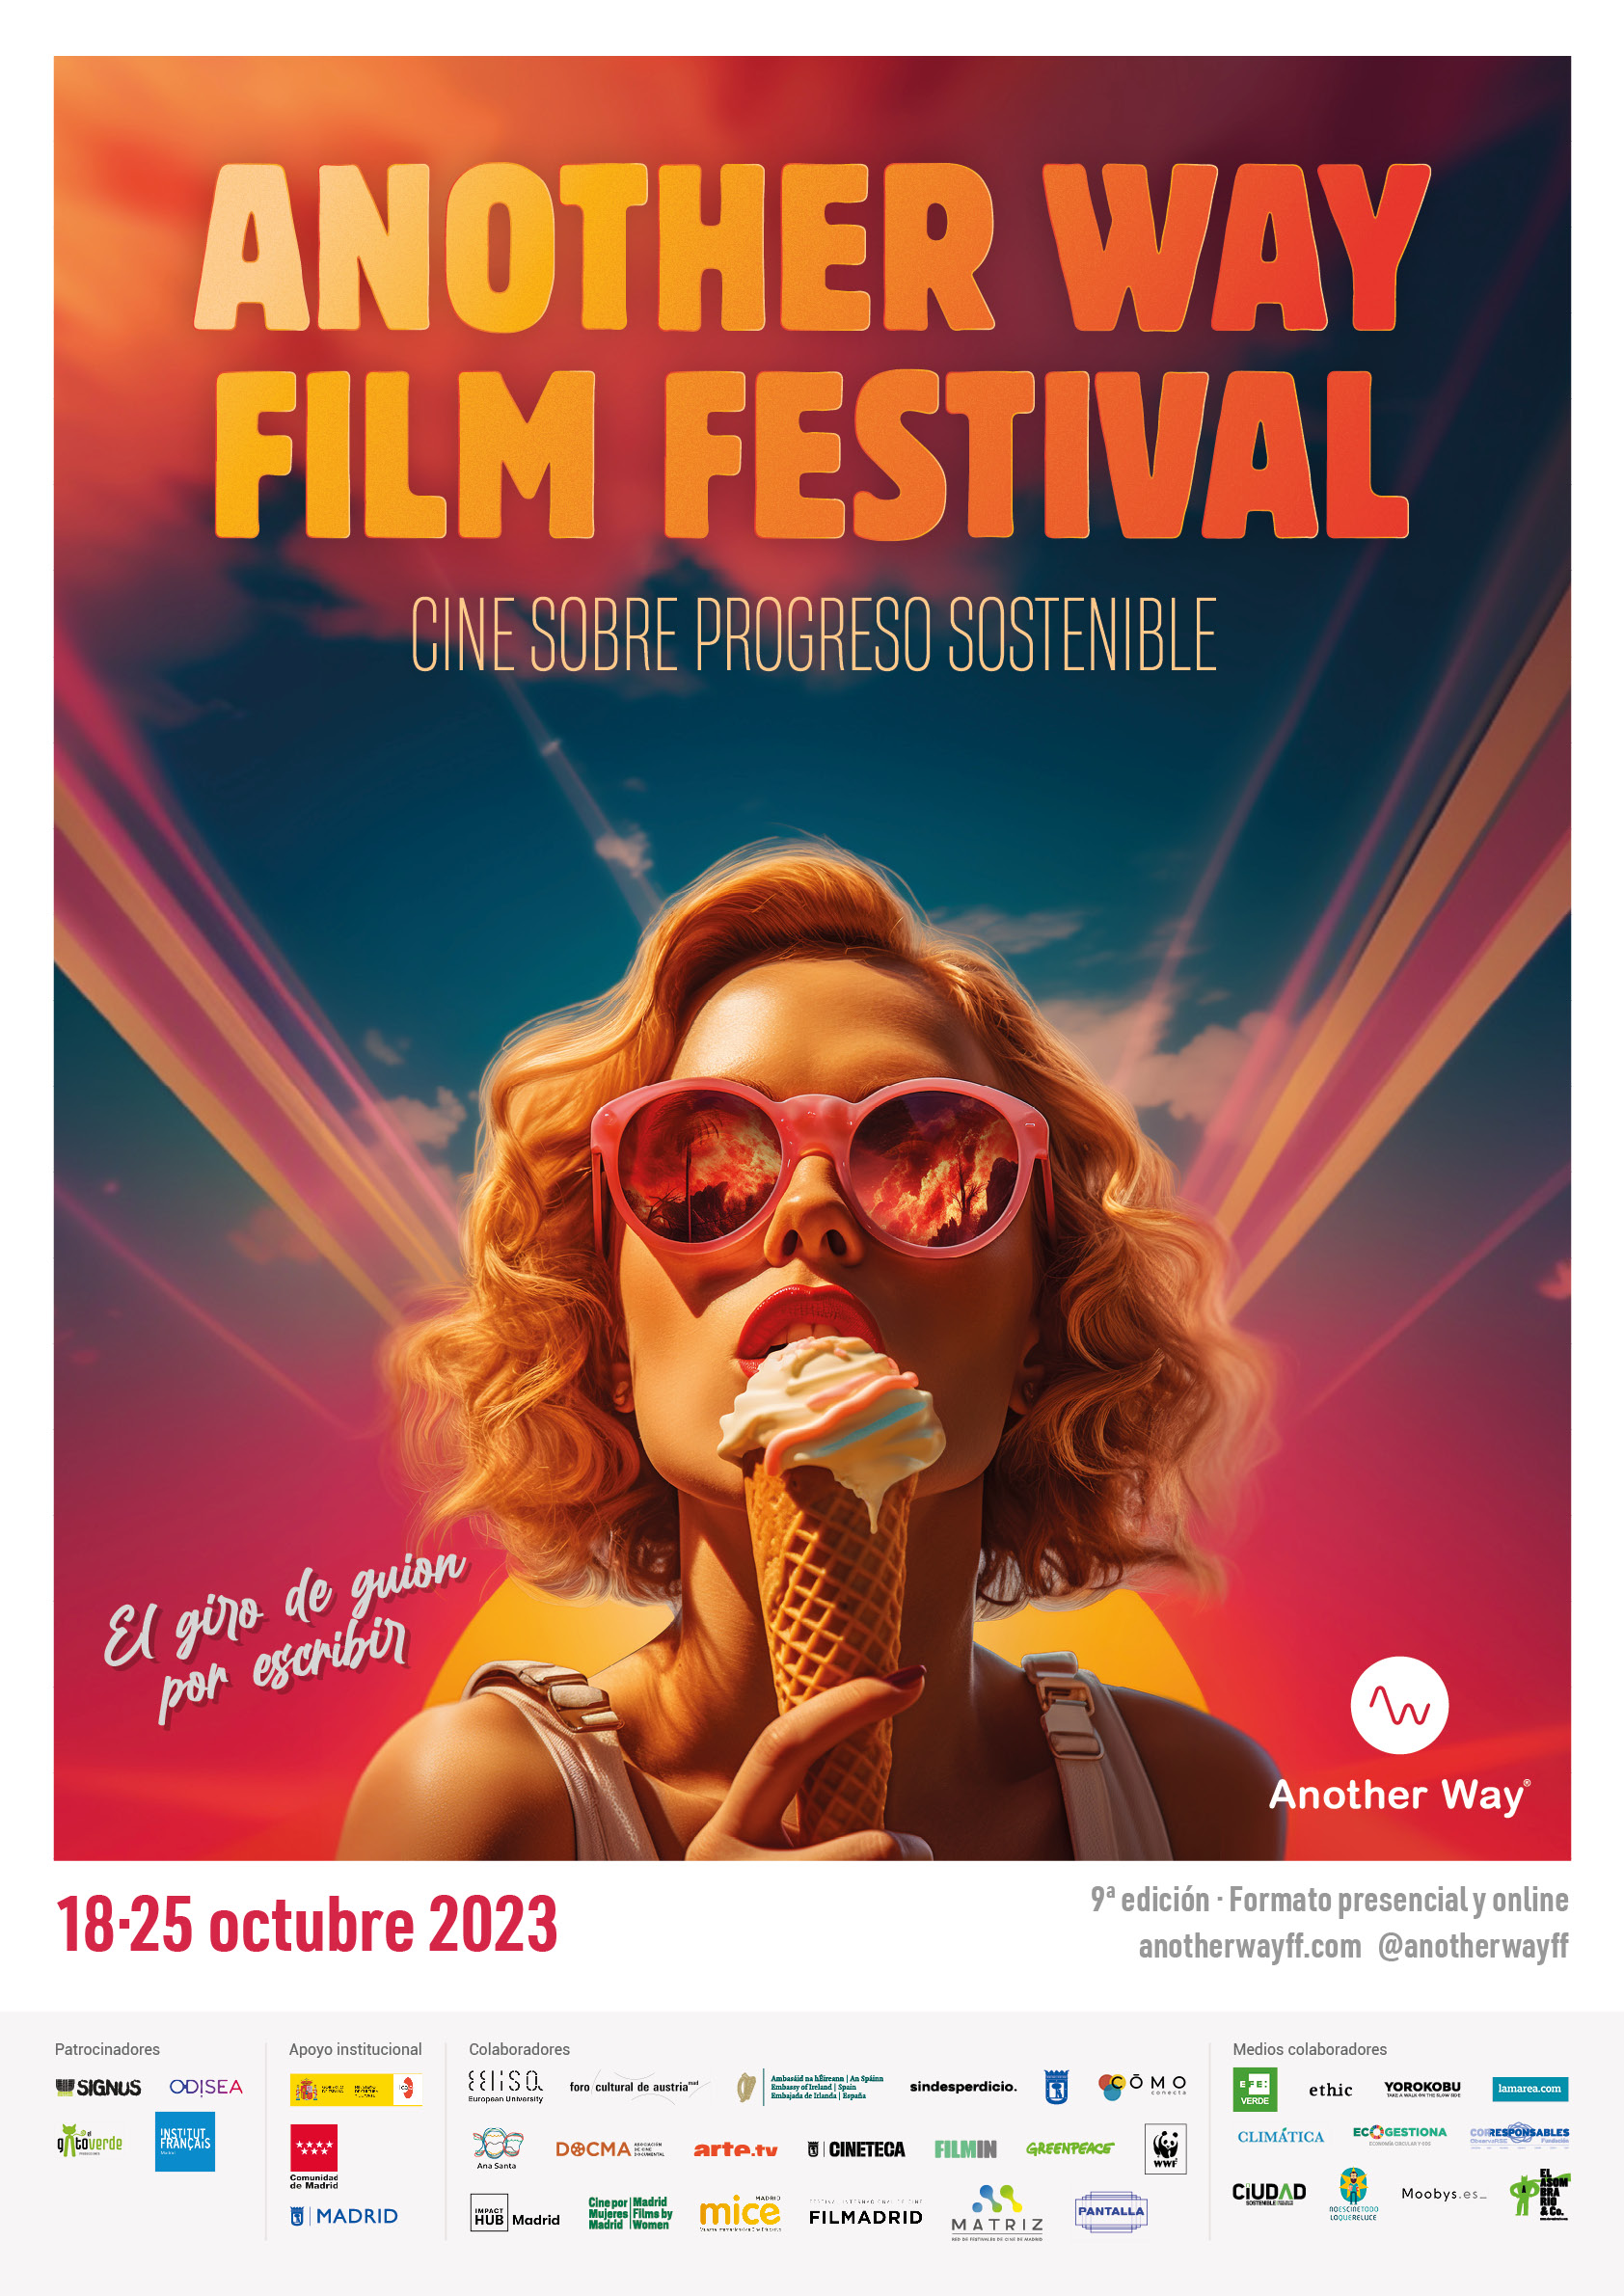 Another Way Film Festival desvela la programación de su novena edición bajo el lema “El giro de guion por escribir”